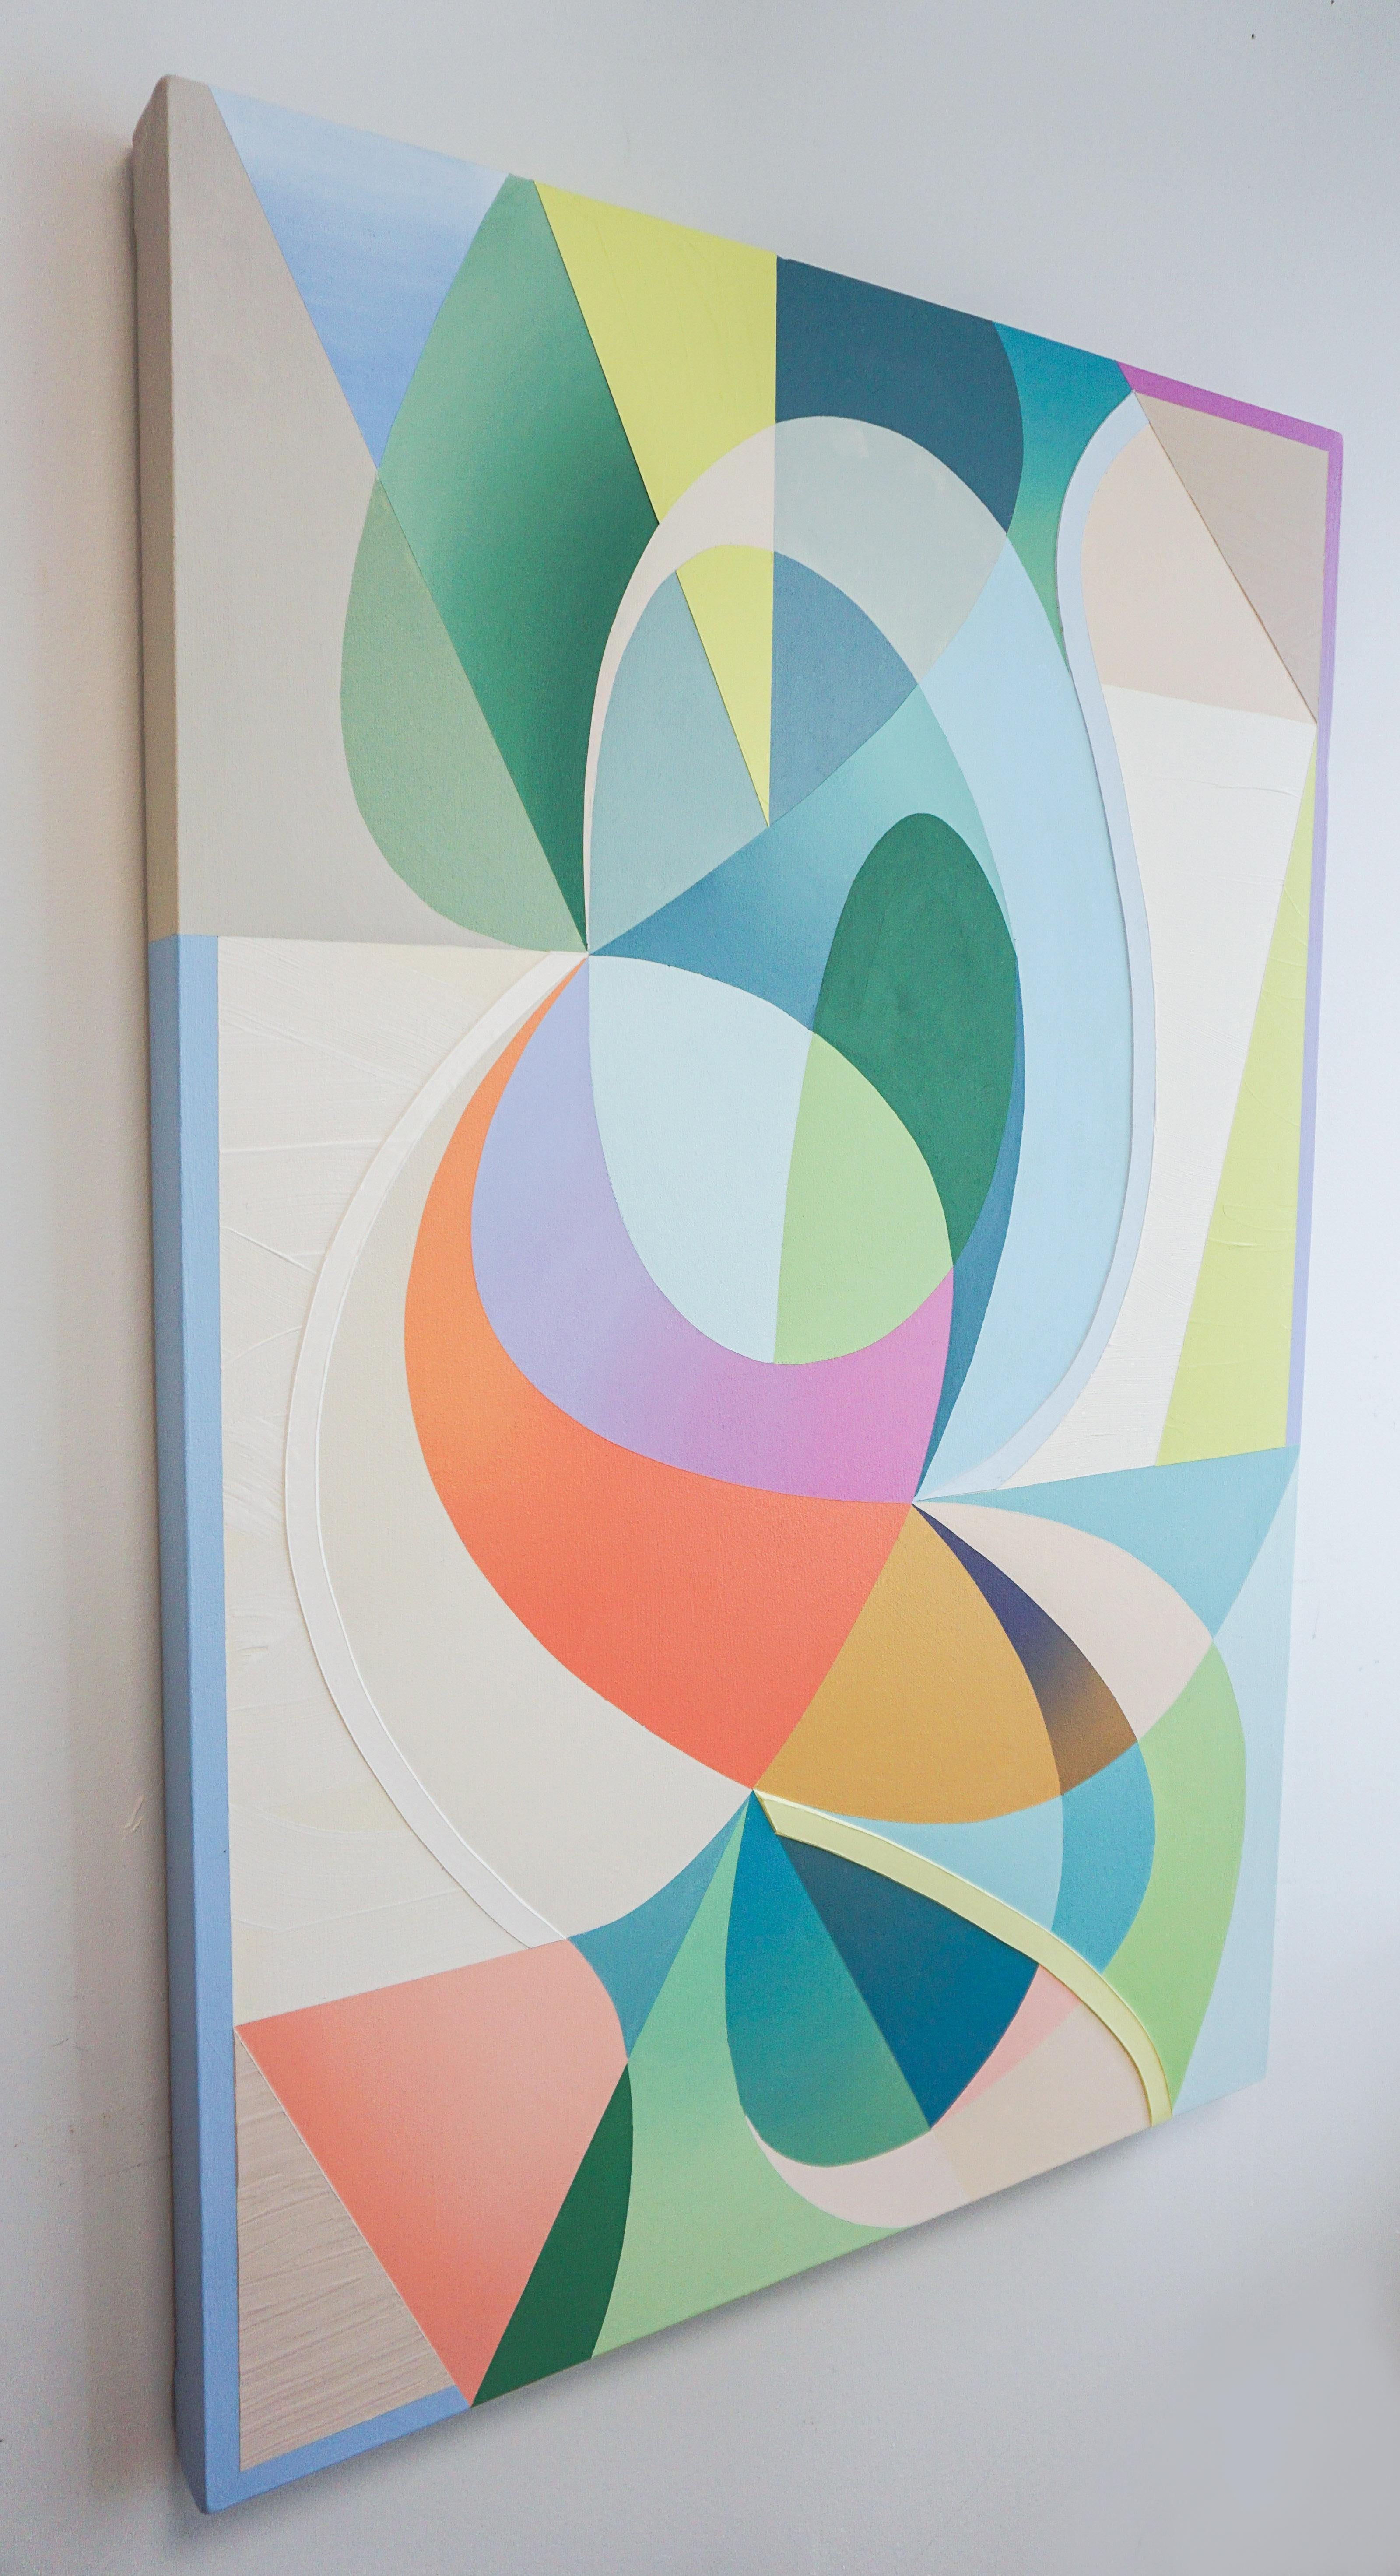 GEOTHERMAL - Peinture expressionniste abstraite contemporaine, géométrique multicolore - Painting de Michelle Weddle